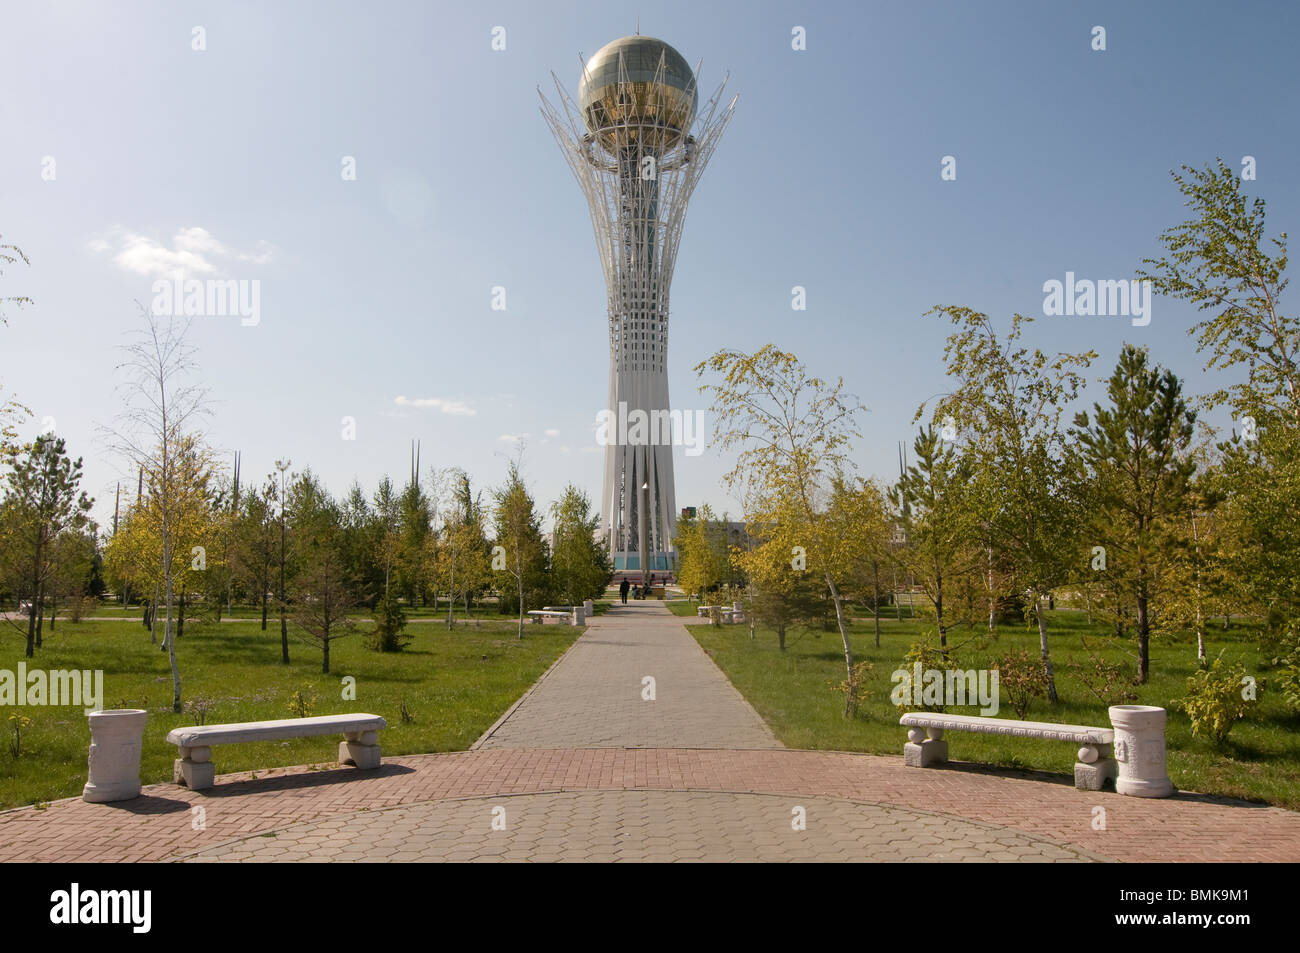 Bayterek Tower, landmark of Astana, Kazakhstan Stock Photo